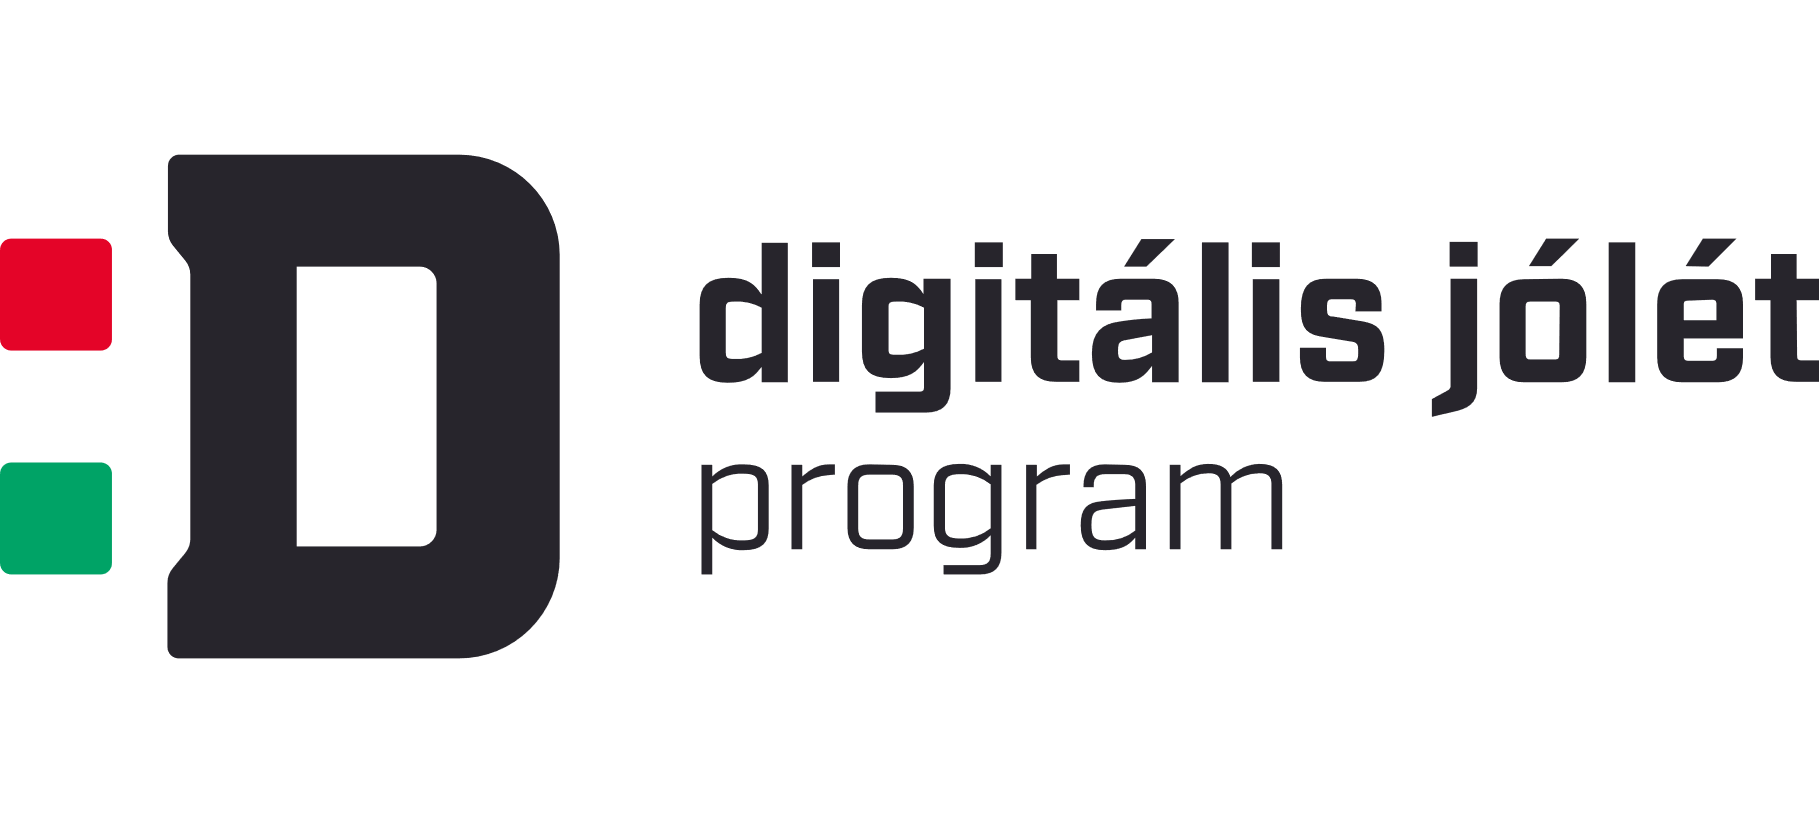 Digitális Jólét Program